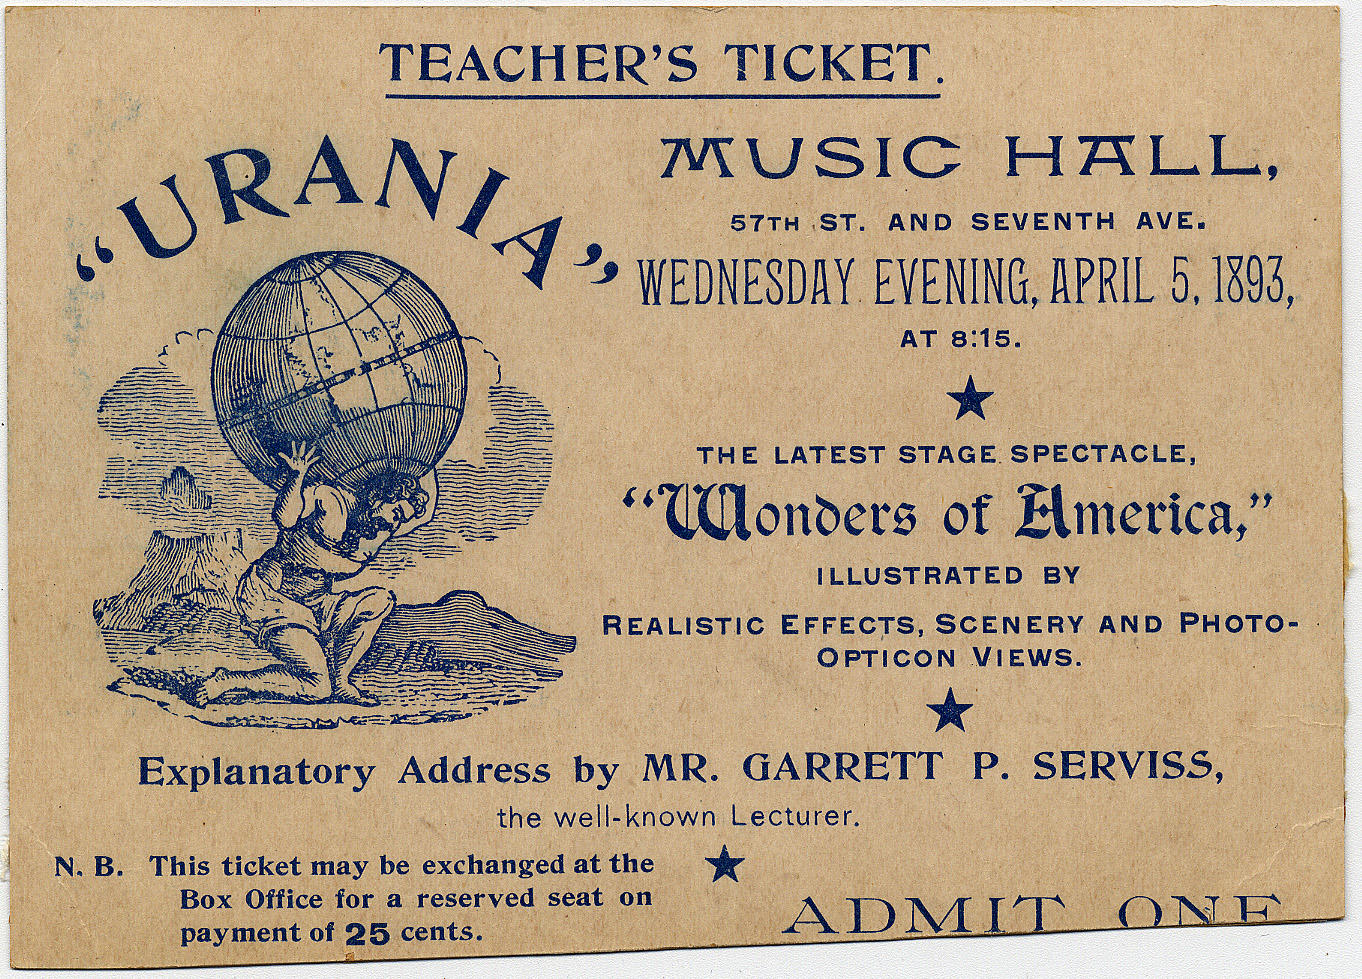 Urania Scientific Theatre ticket, April 5, 1893